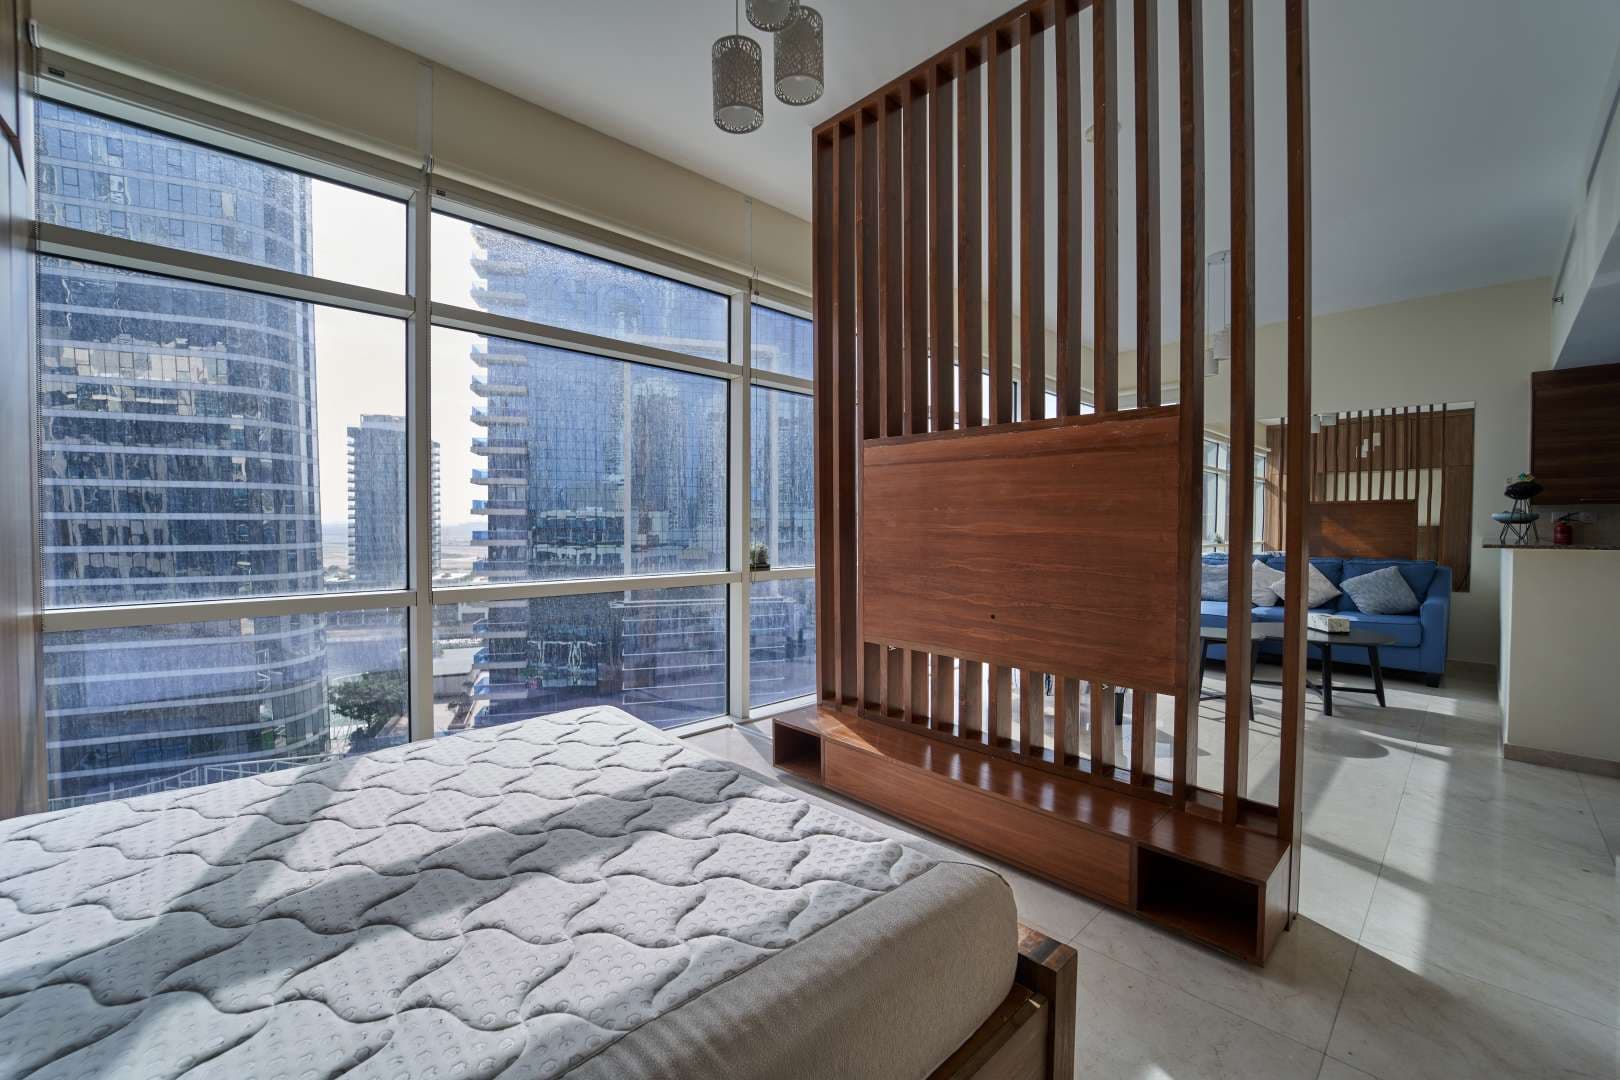 Studio Bedroom Apartment For Rent Bay Square Lp10549 5d5d779f99d1180.jpg